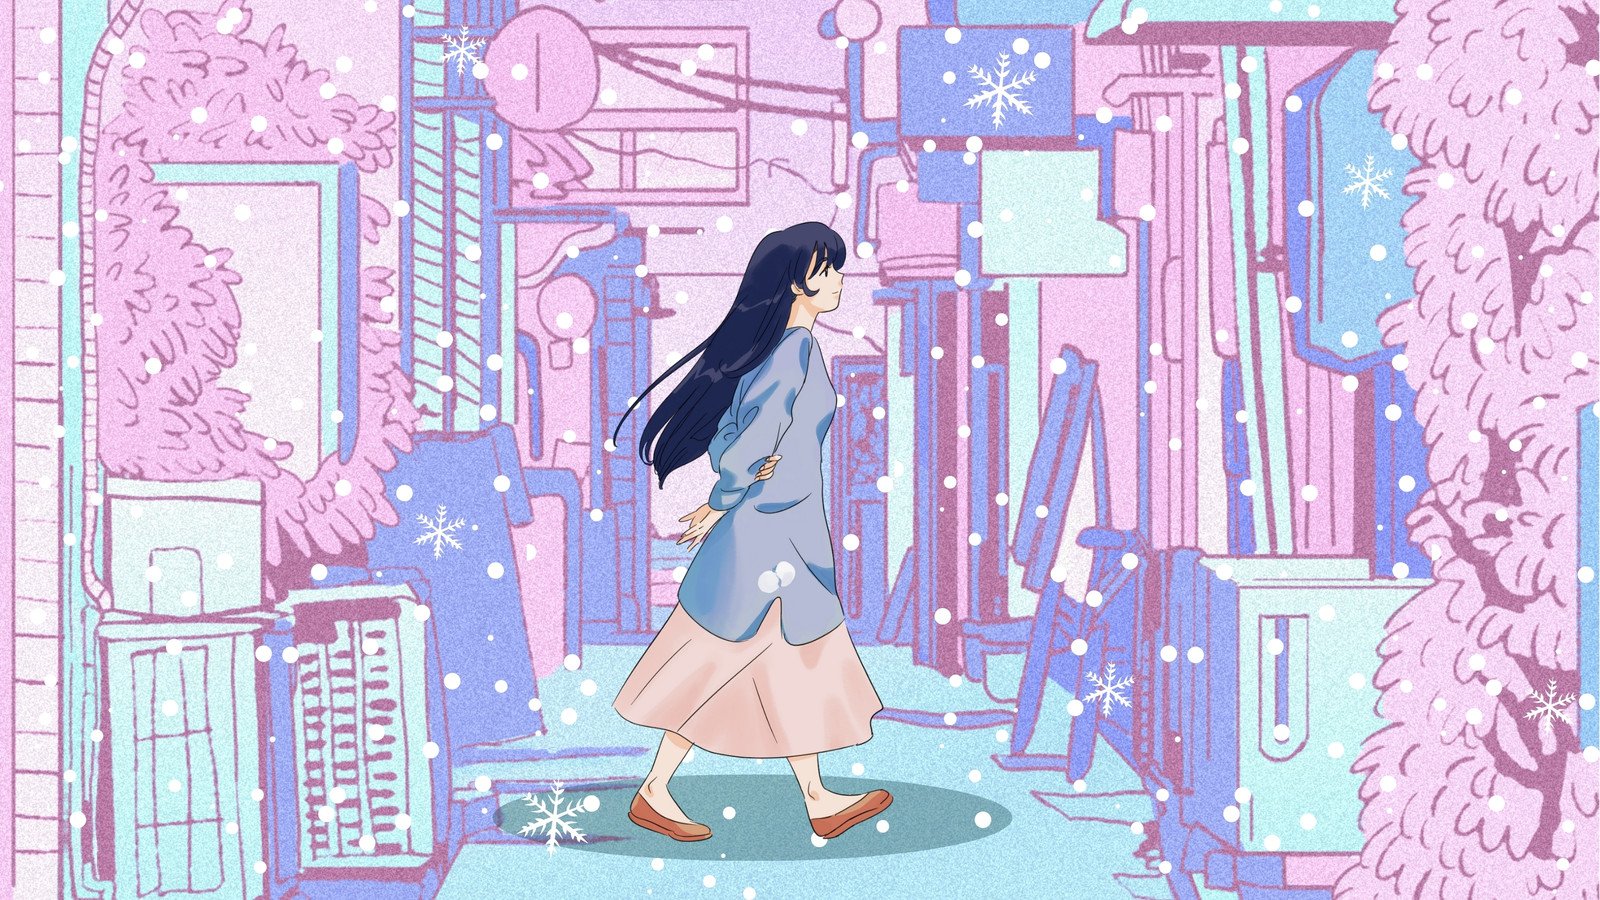 Anime Game Aesthetic PC Wallpaper  Anime scenery, Anime girl, Anime  wallpaper